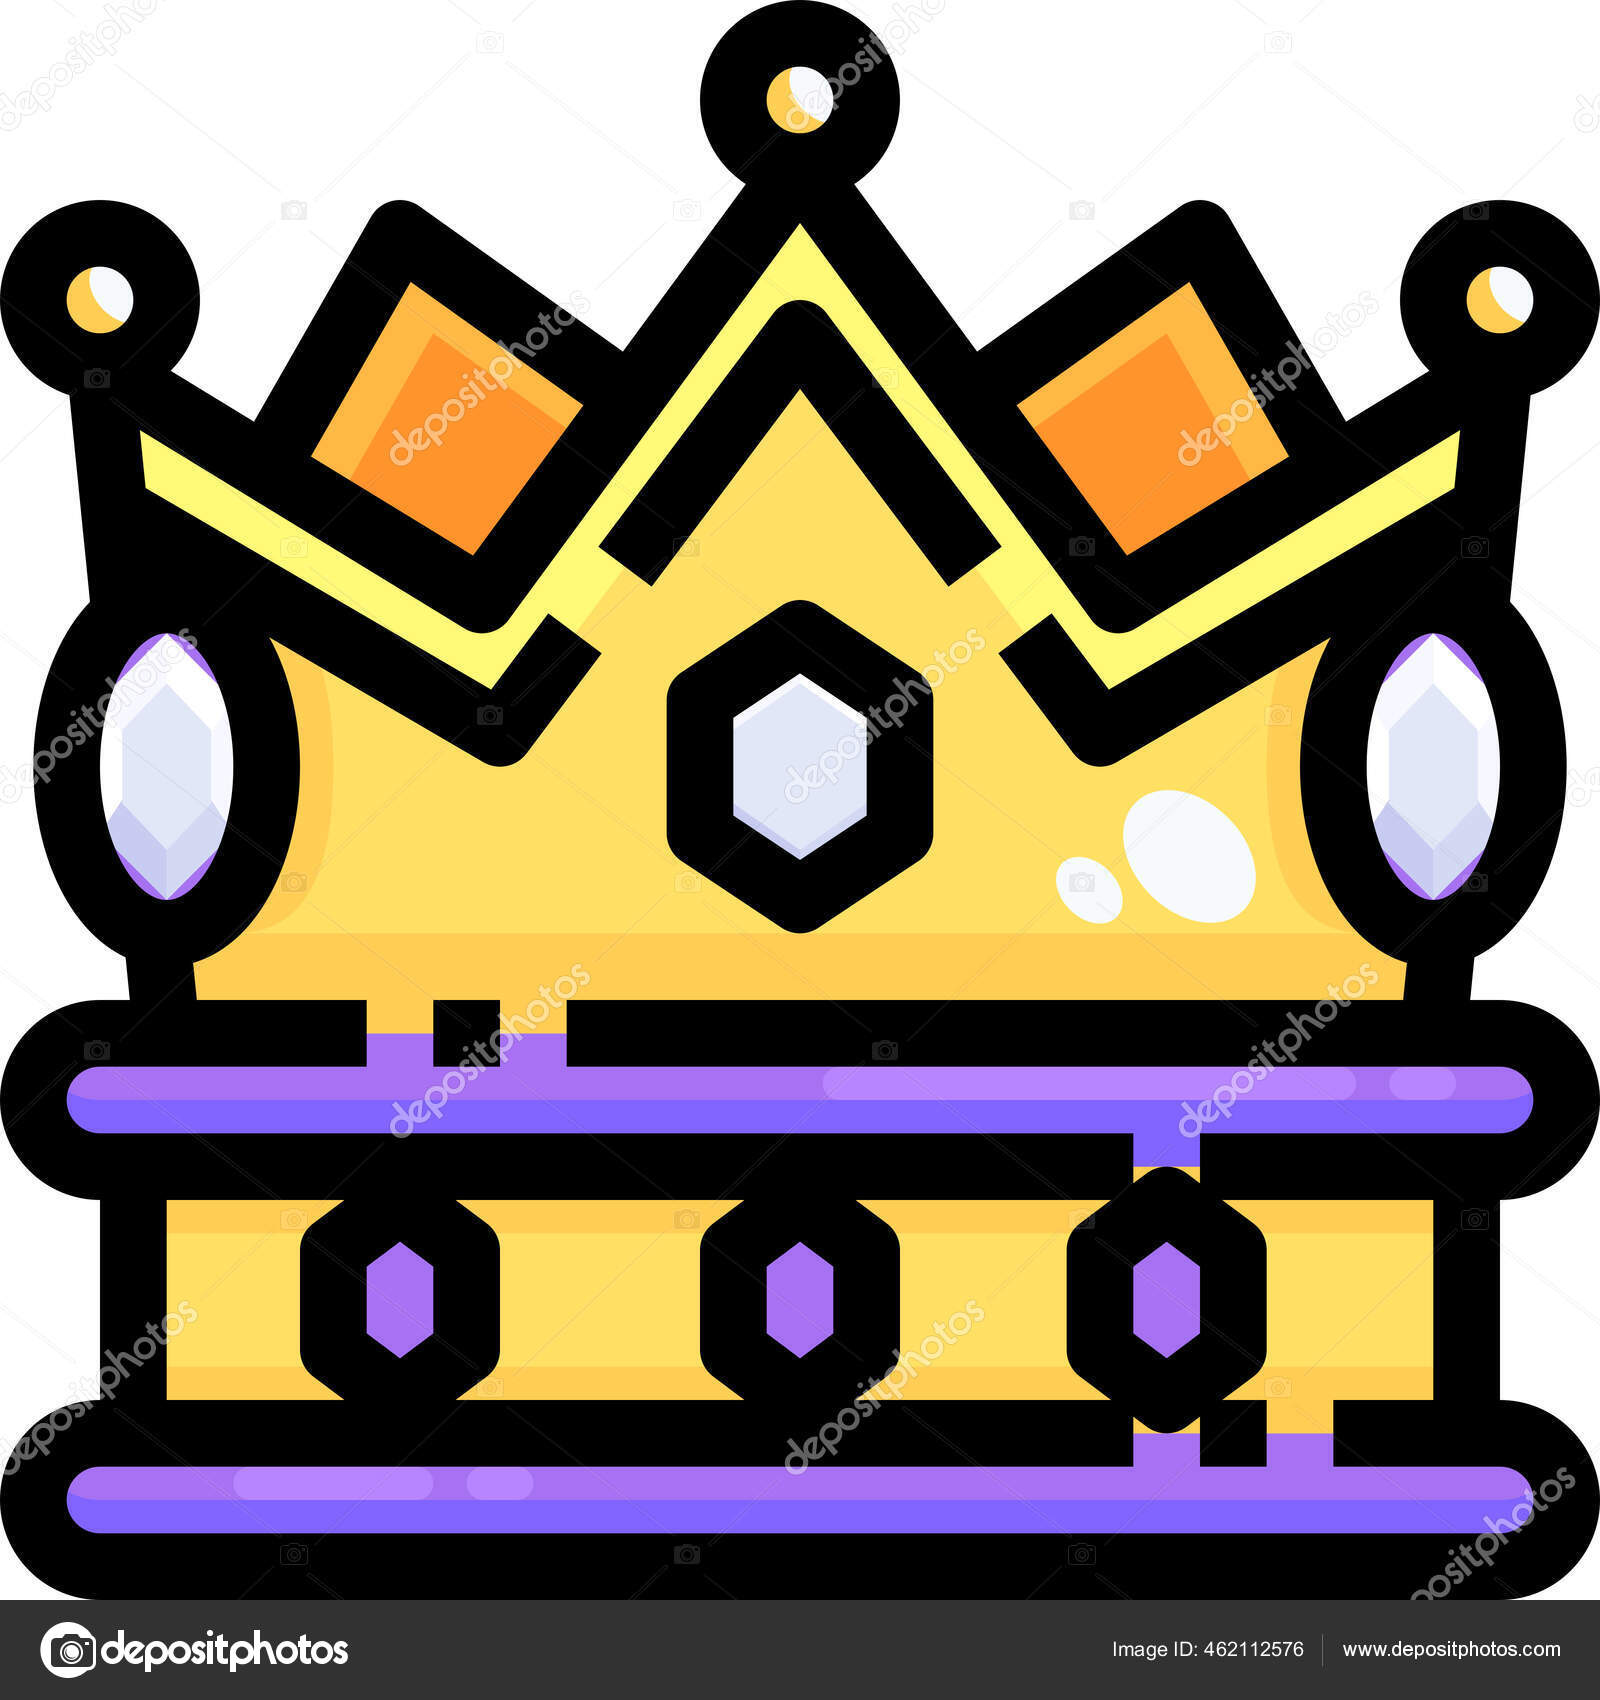 Vetores de Coroa De Rei E Rainha Símbolo De Xadrez Ícones De Royal